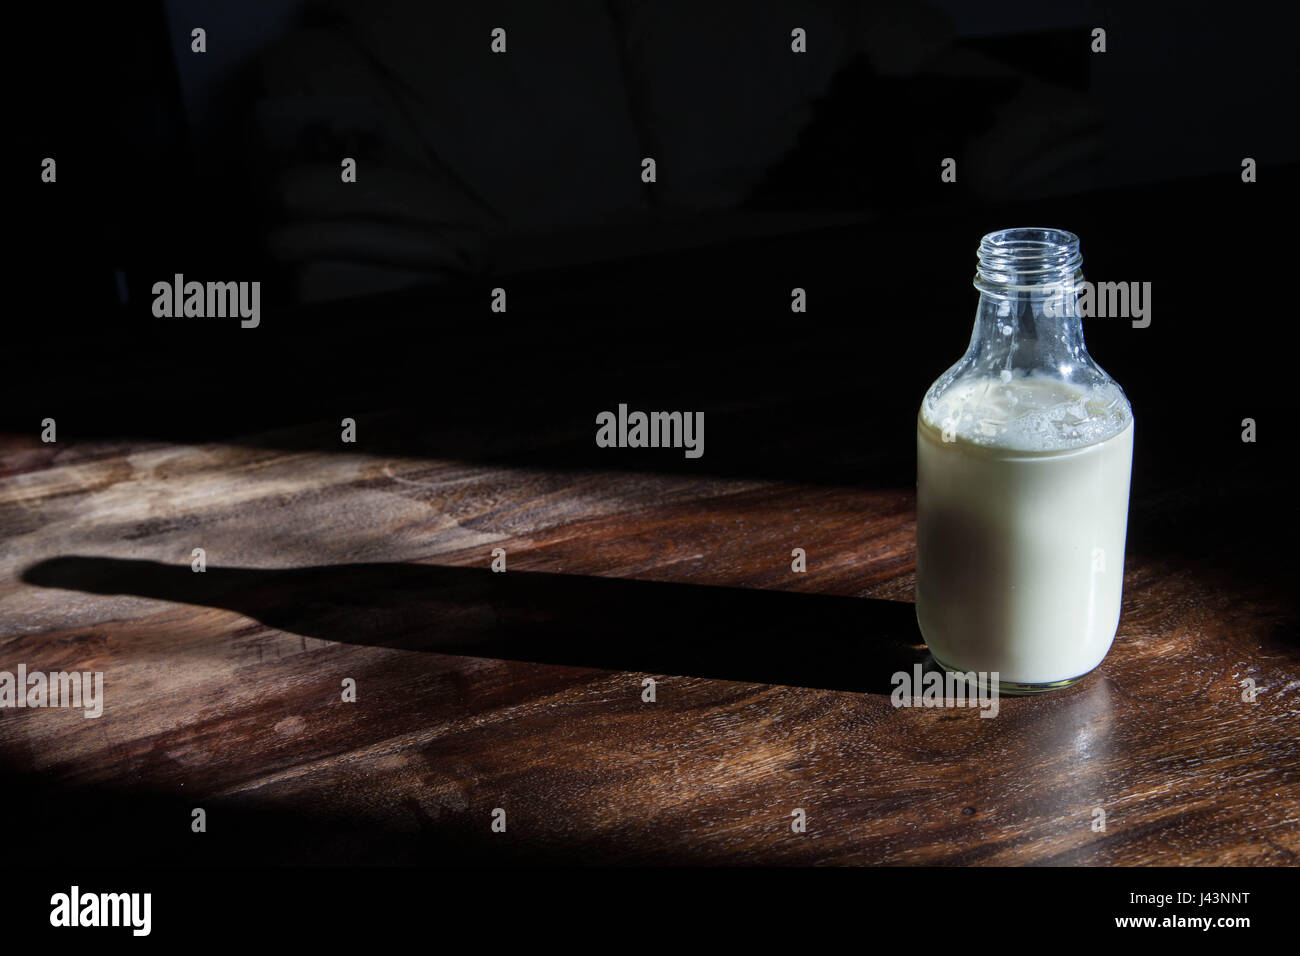 https://c8.alamy.com/comp/J43NNT/milk-in-an-old-fashioned-antique-milk-bottle-J43NNT.jpg